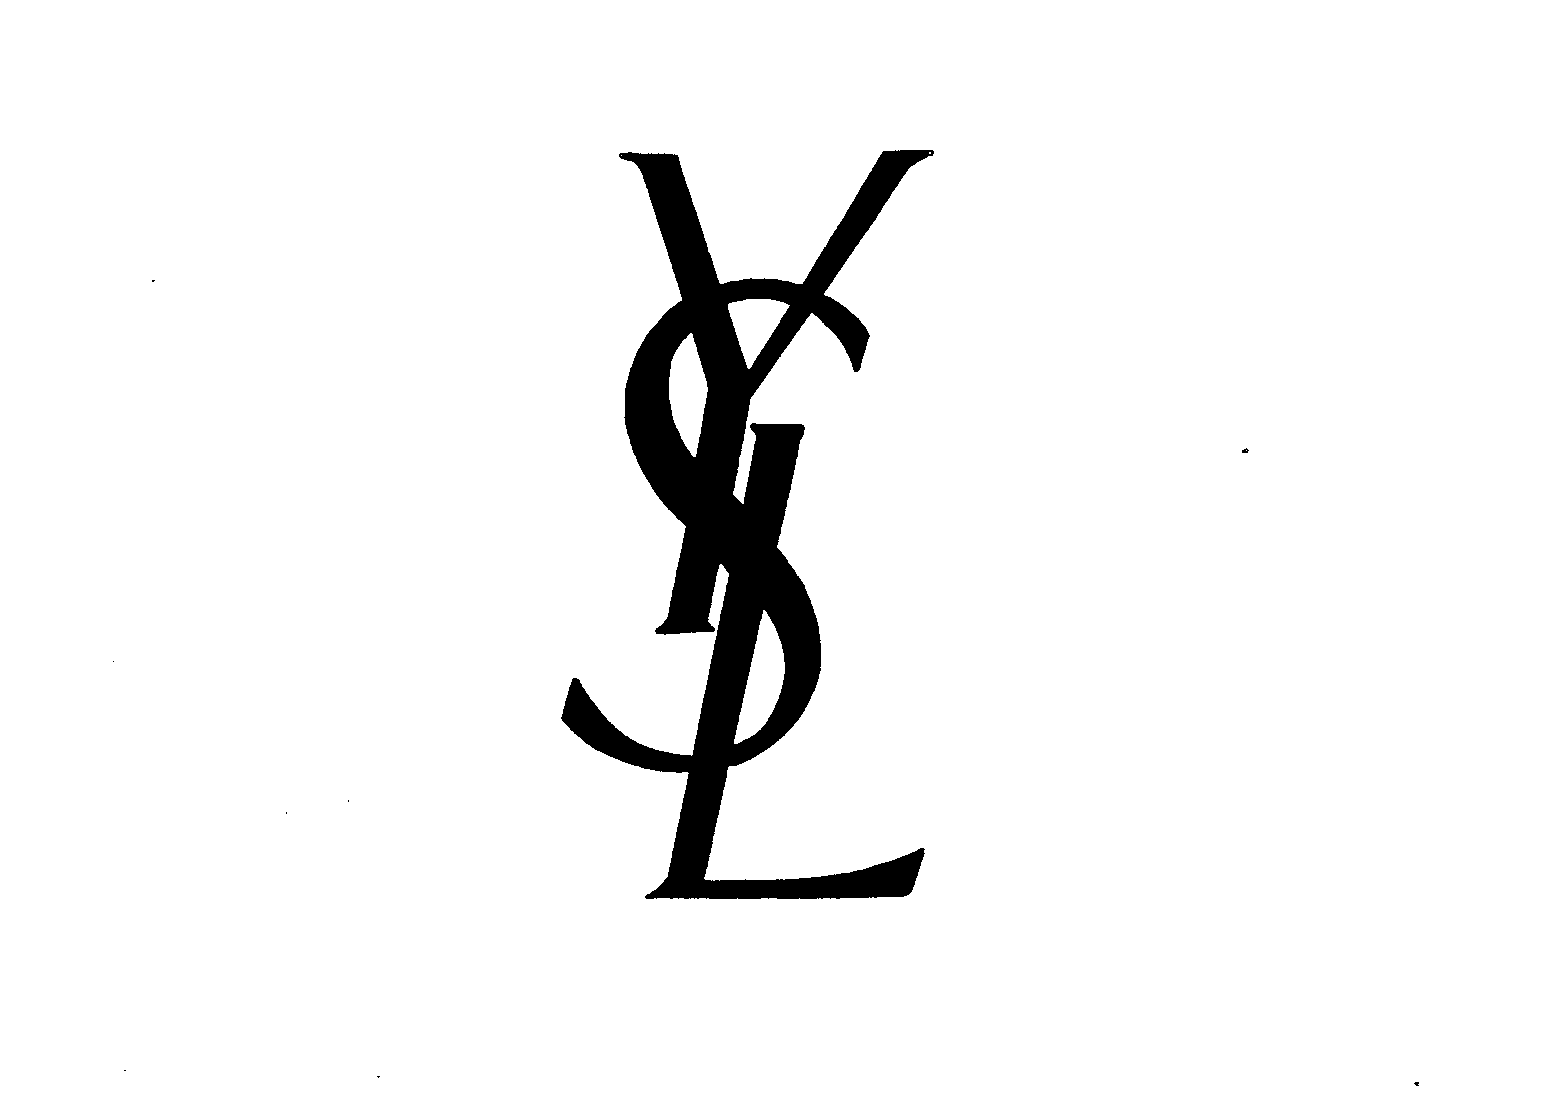 YSL - Yves Saint Laurent Trademark Registration